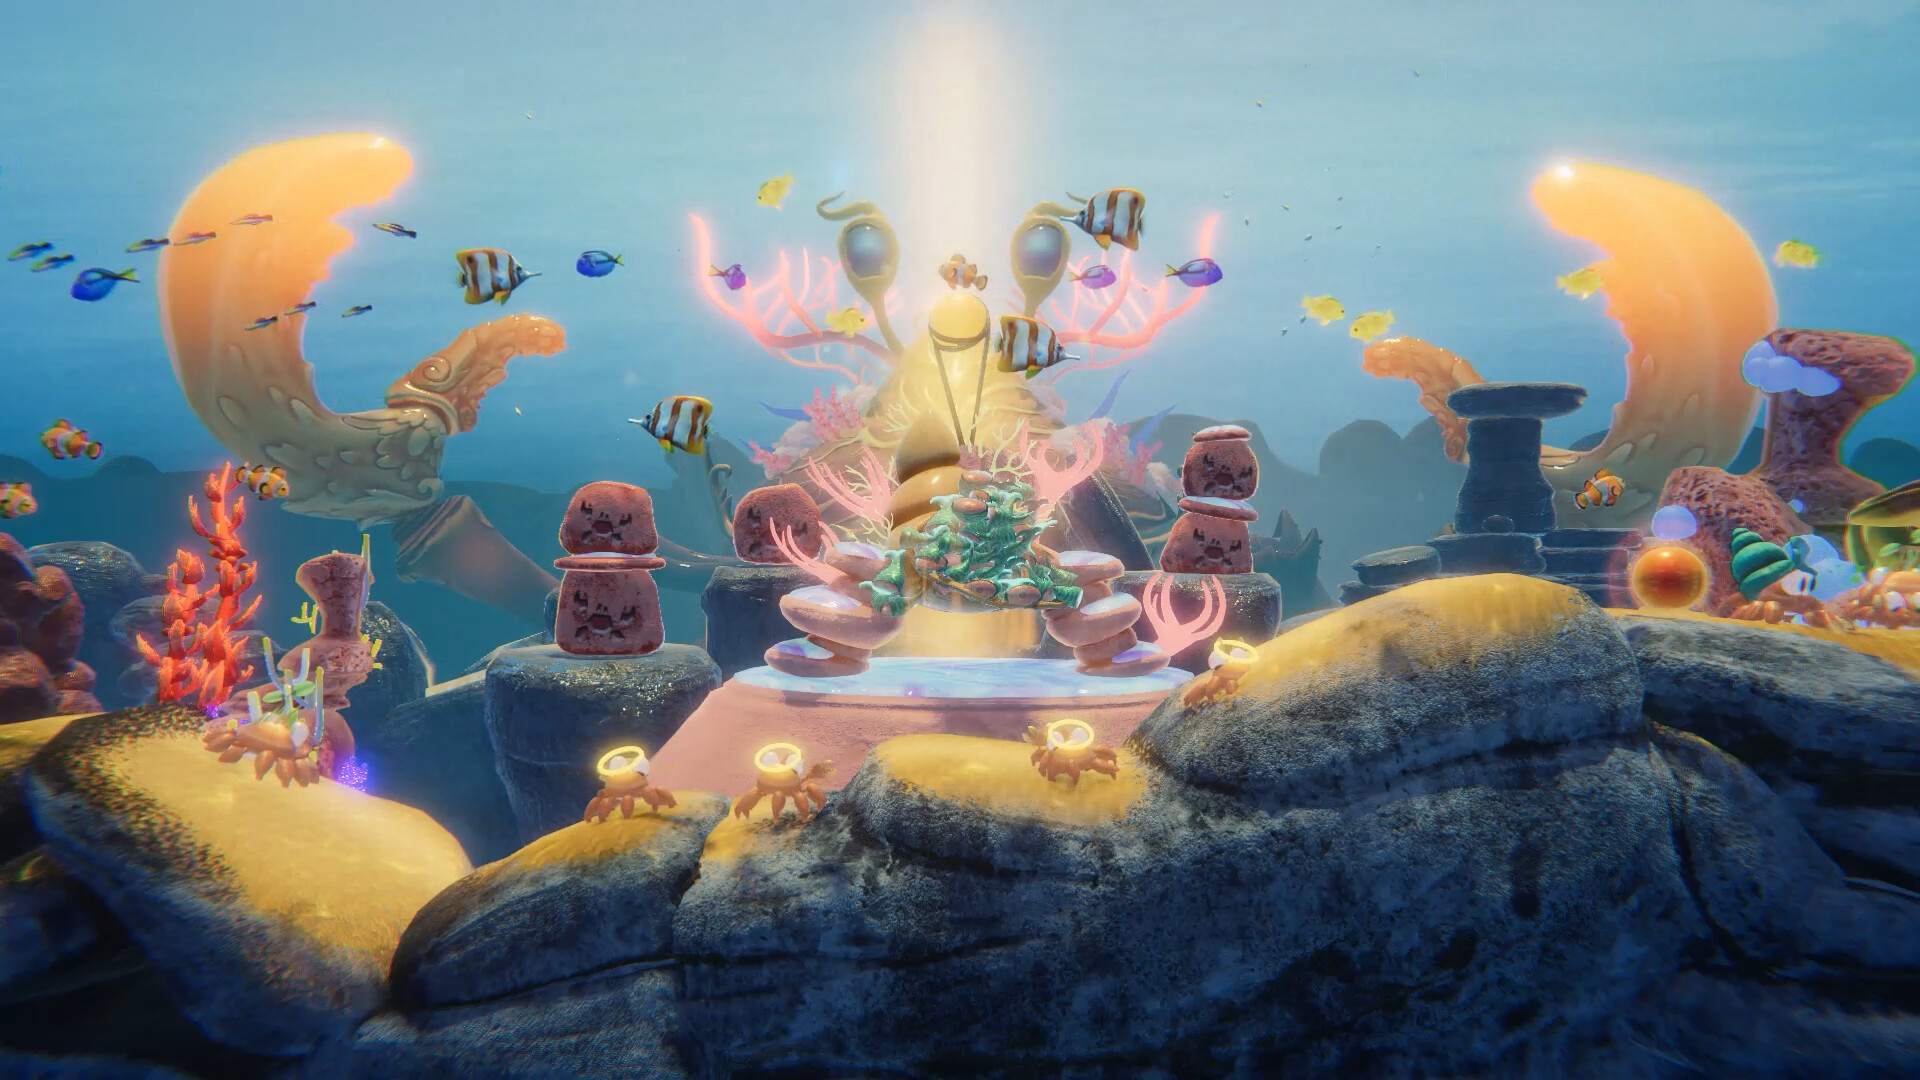 策略模拟游戏《螃蟹之神》现已经登录Steam平台 6月20日正式推出